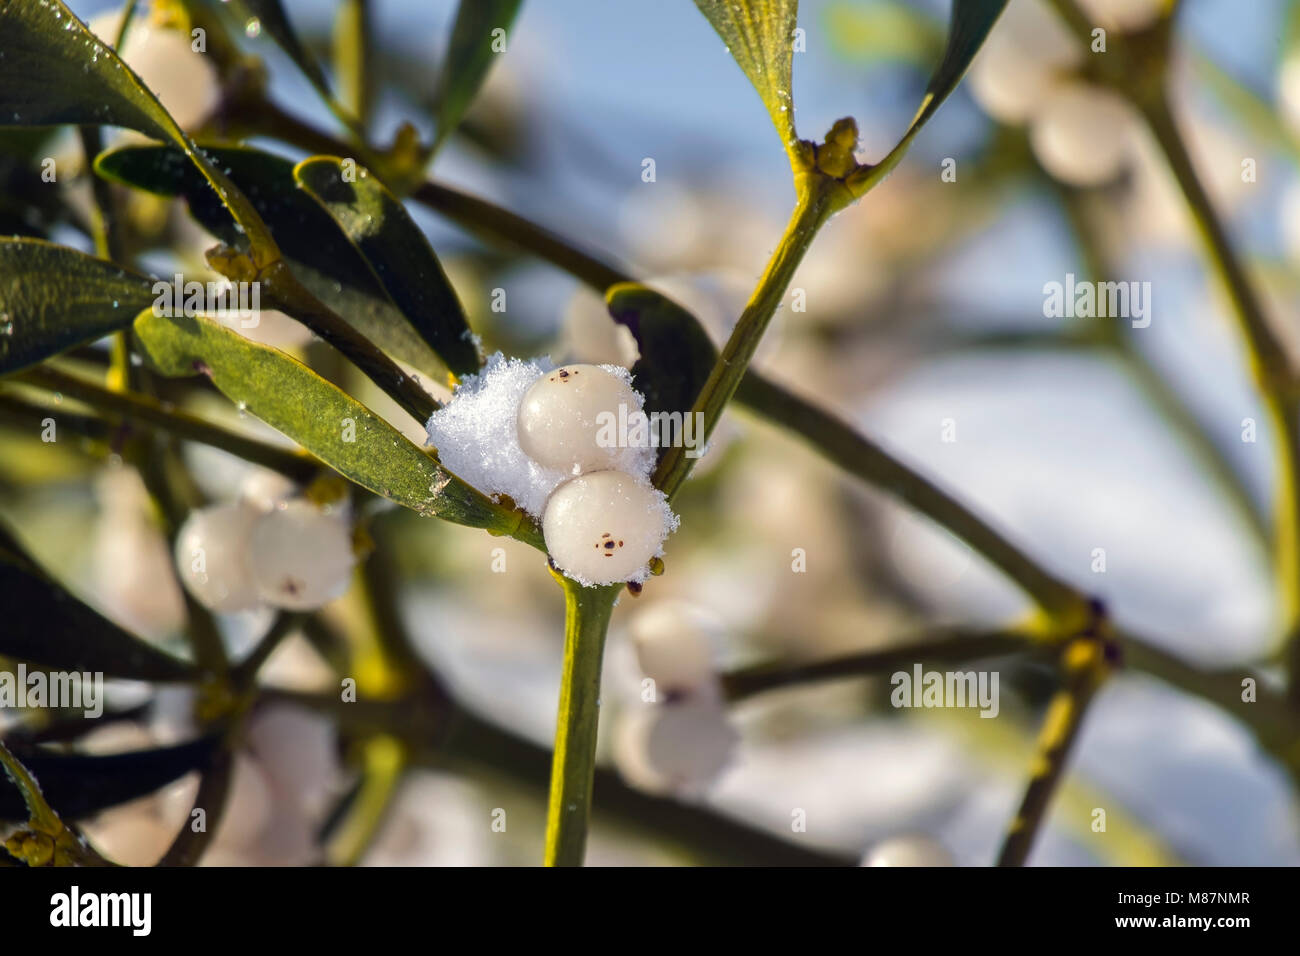 Berry of mistletoe covered with snow (Viscum album) Stock Photo